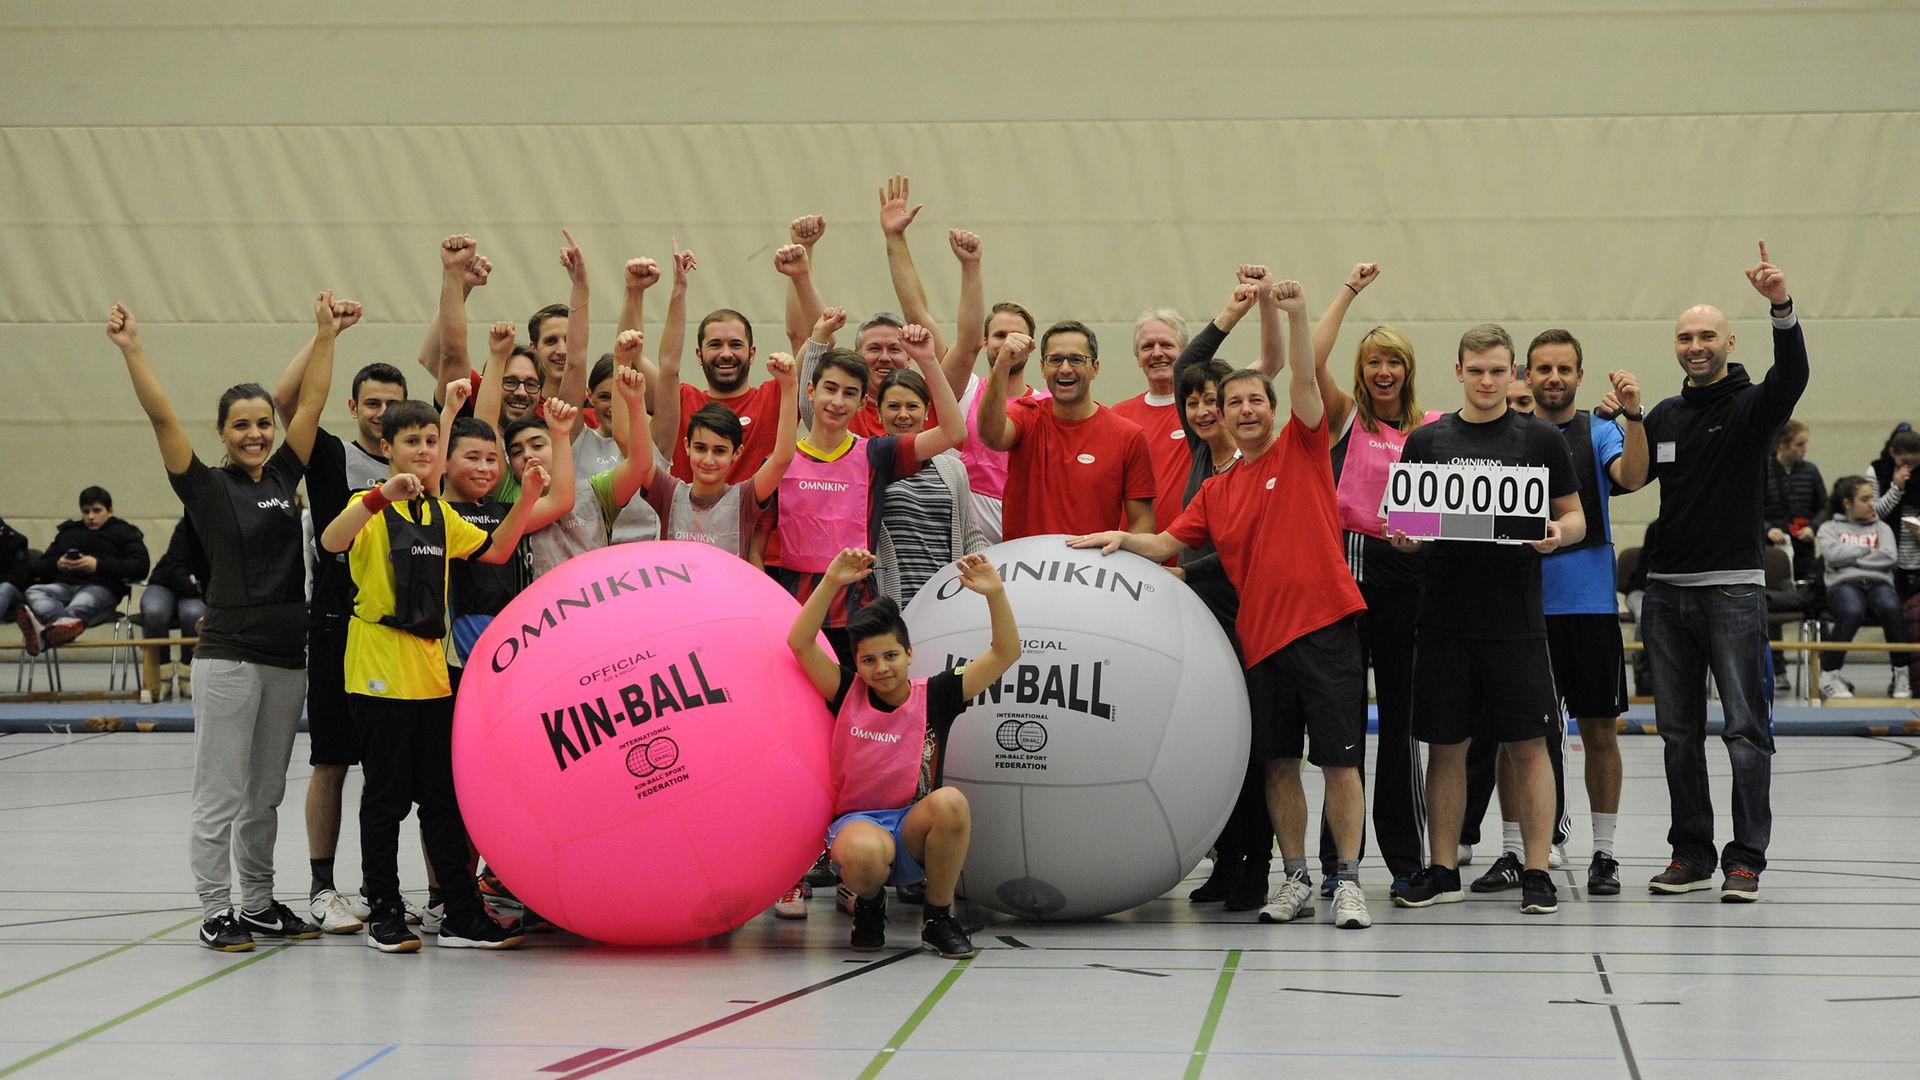 Die Henkel-Mitarbeiter hatten sichtlich Spaß beim Kin-Ball-Turnier mit den Schülern der Gesamtschule Osterfeld in Oberhausen.